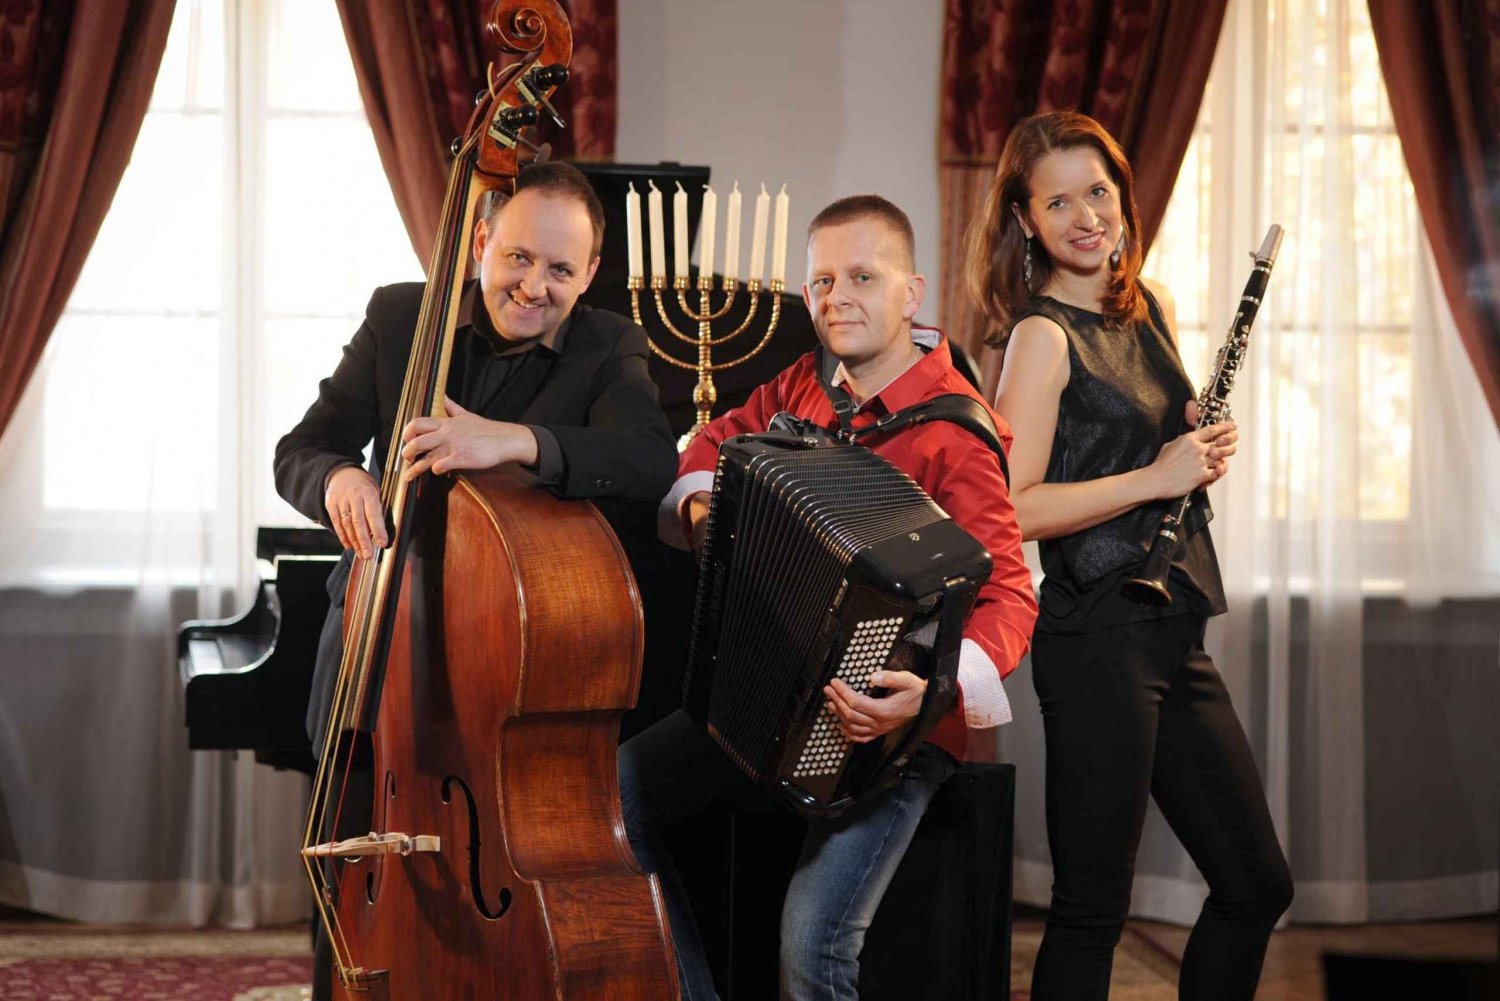 Krakova: Klezmer-musiikin juutalaistyylinen konsertti